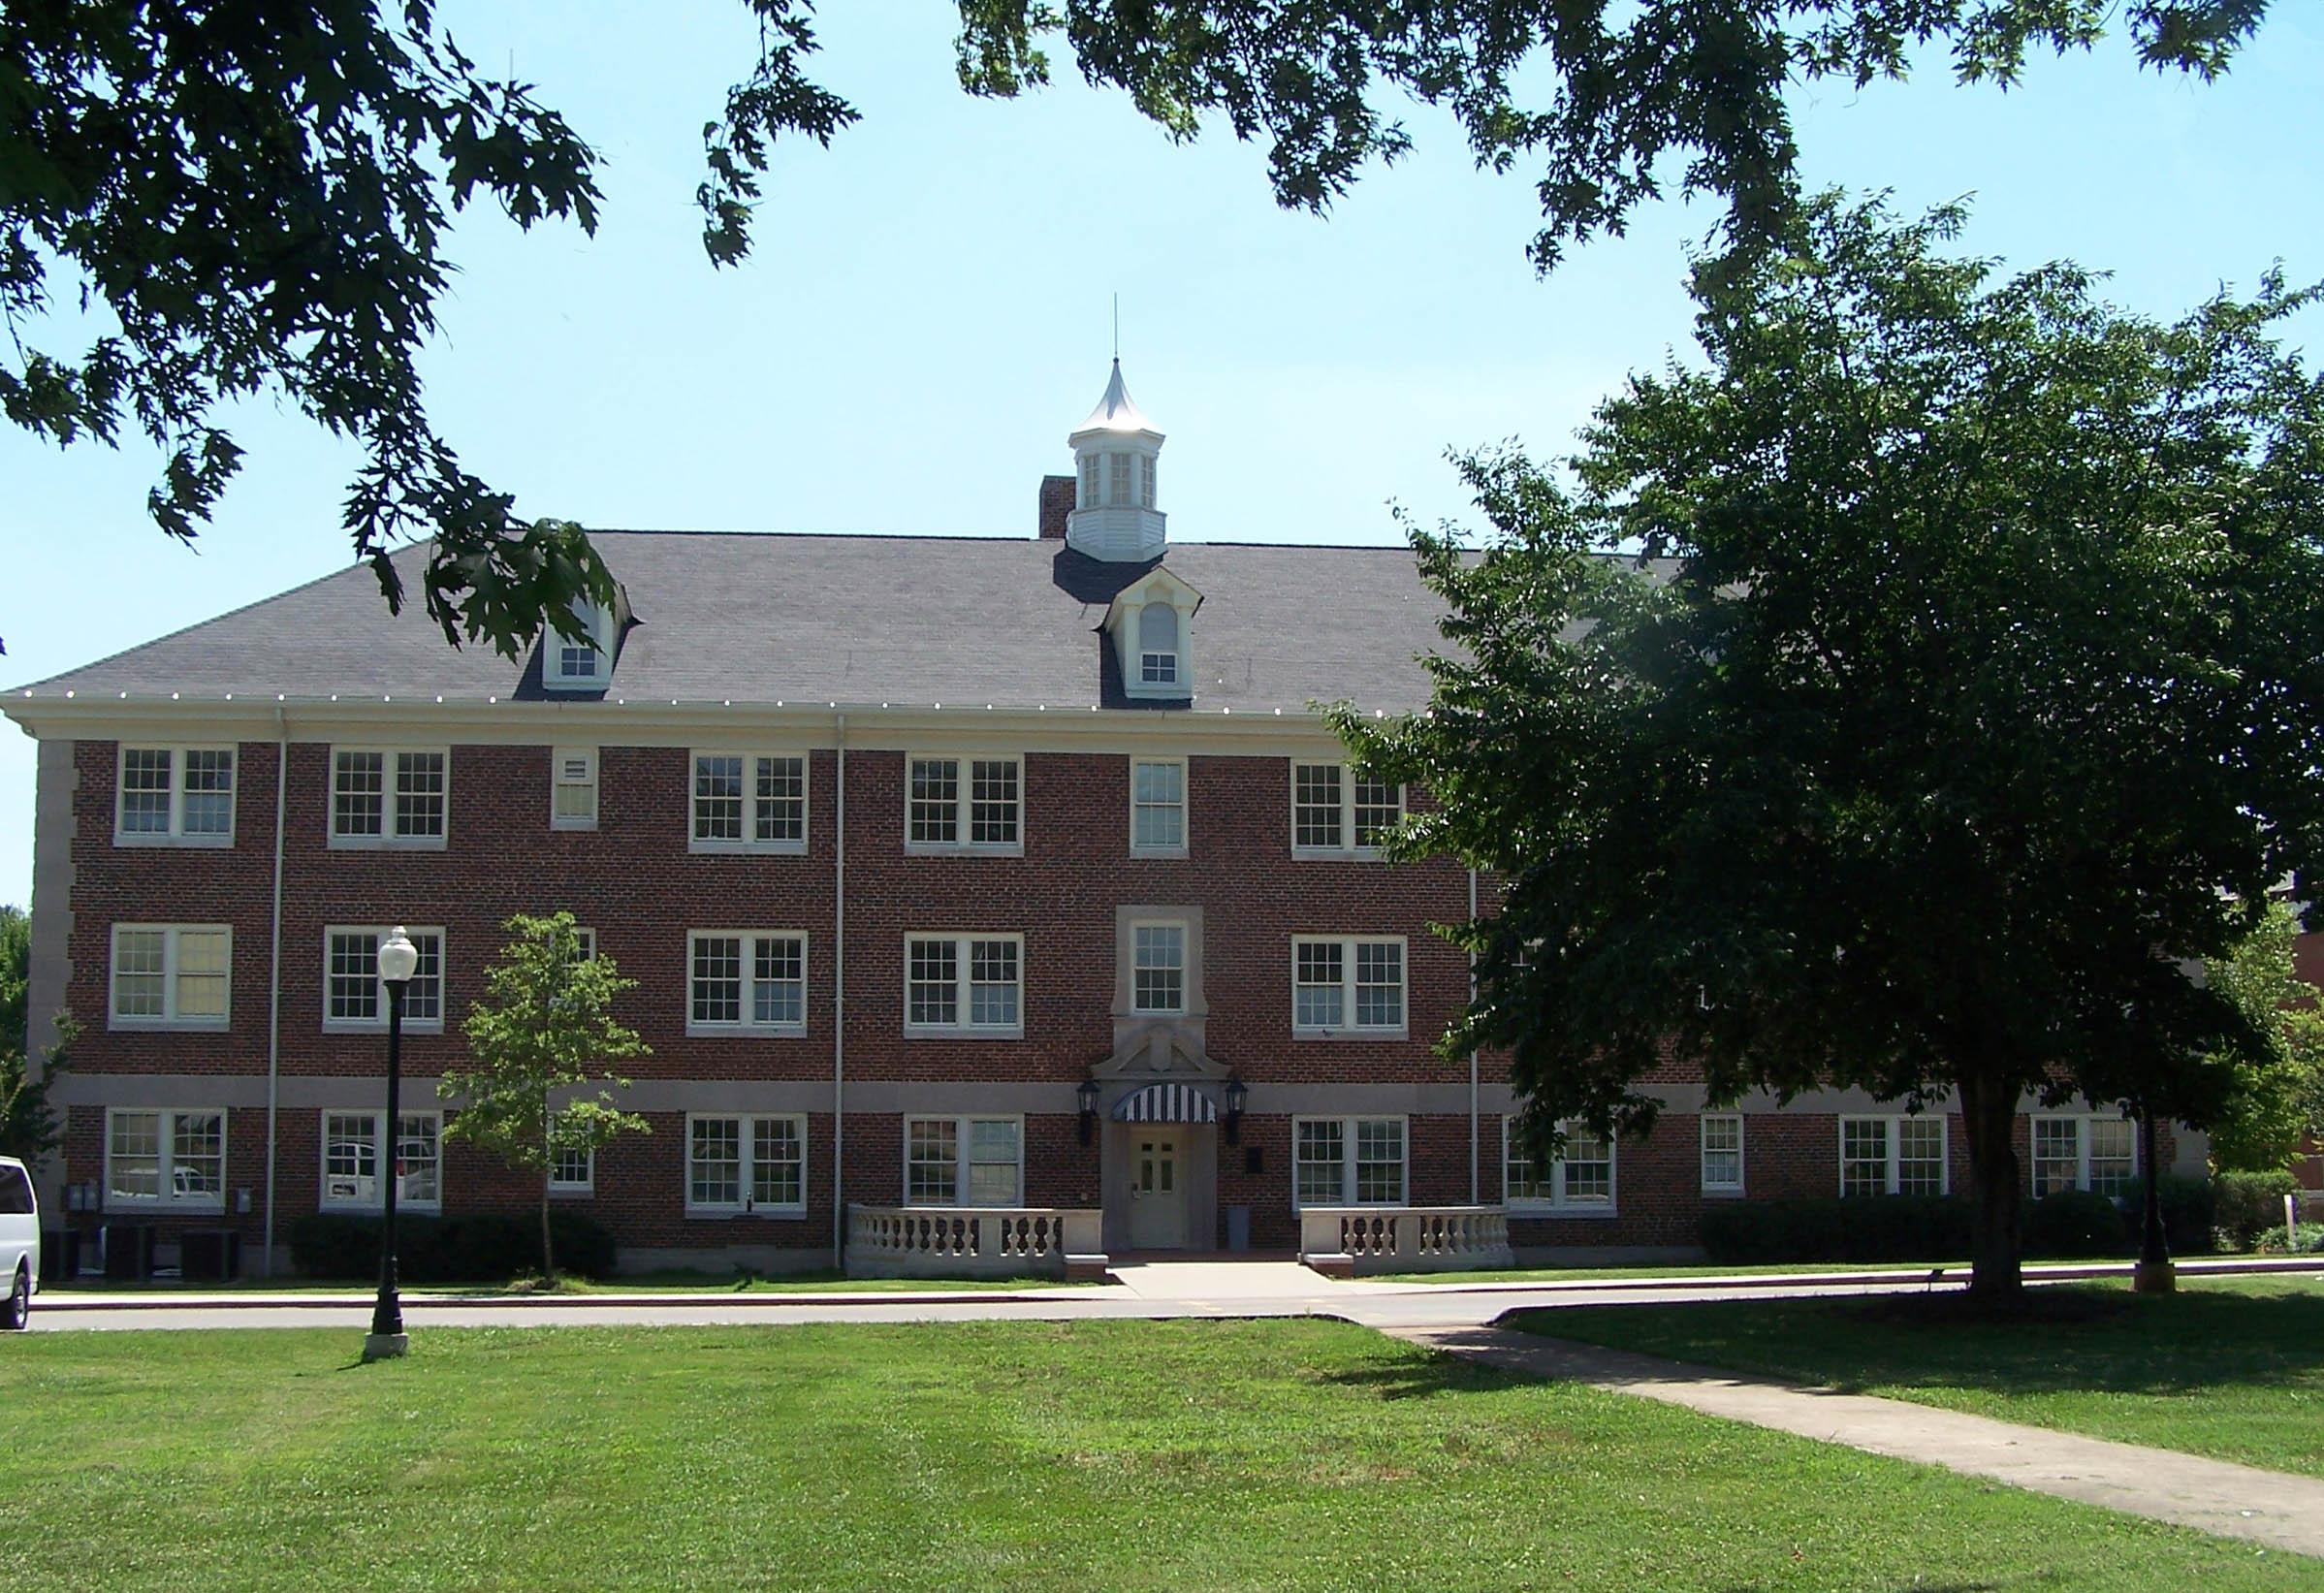 Sanders Hall